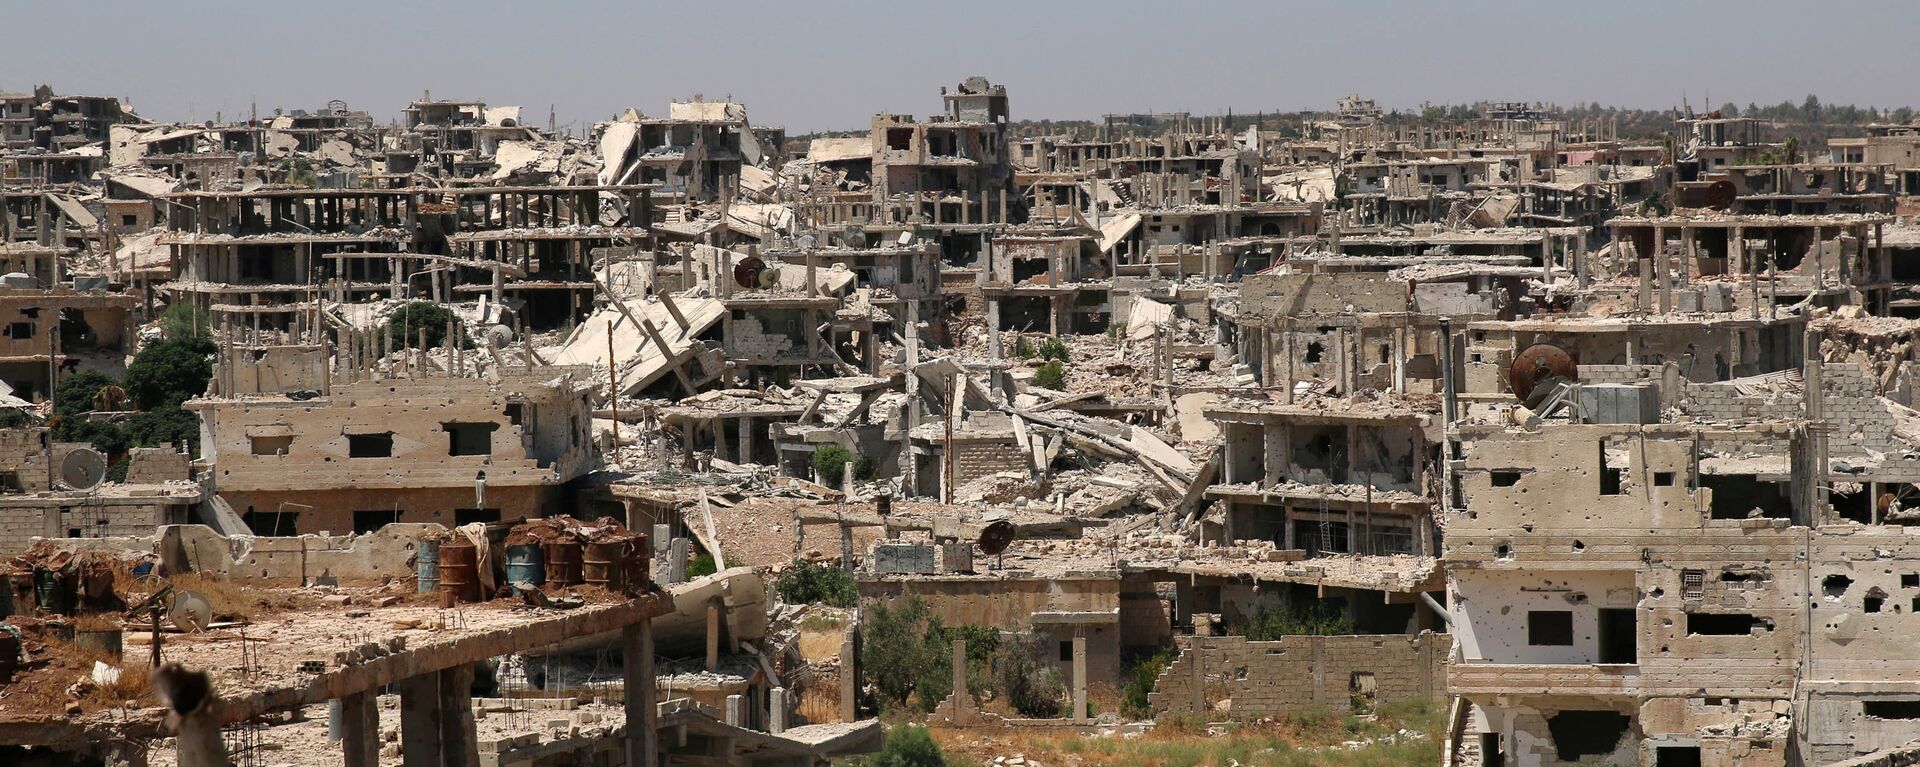 Edificios destruidos en Deraa, Siria (archivo) - Sputnik Mundo, 1920, 06.09.2021